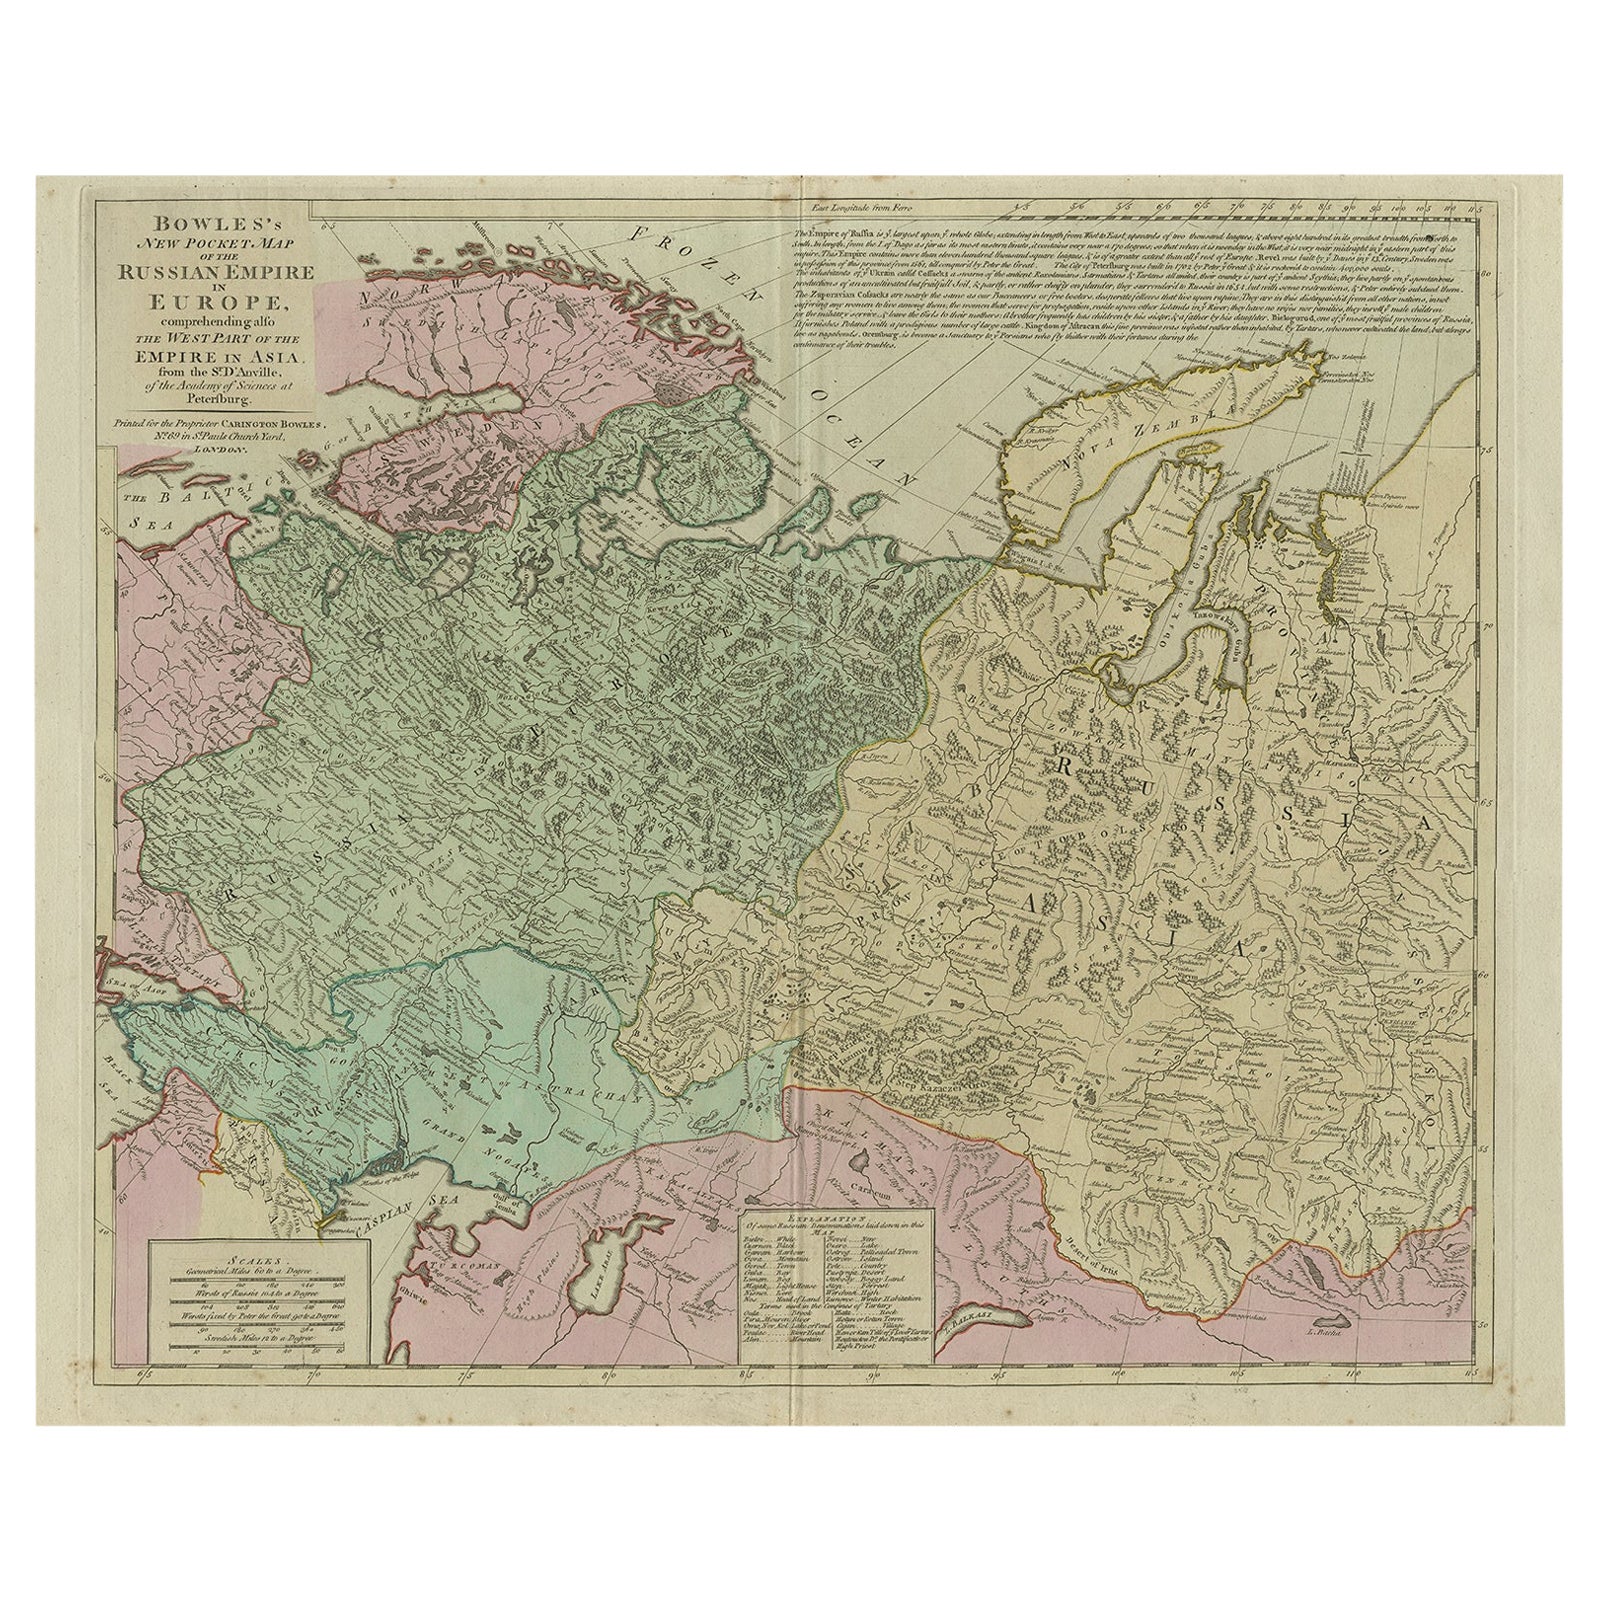 Carte ancienne de l'Empire russe en Europe, vers 1780